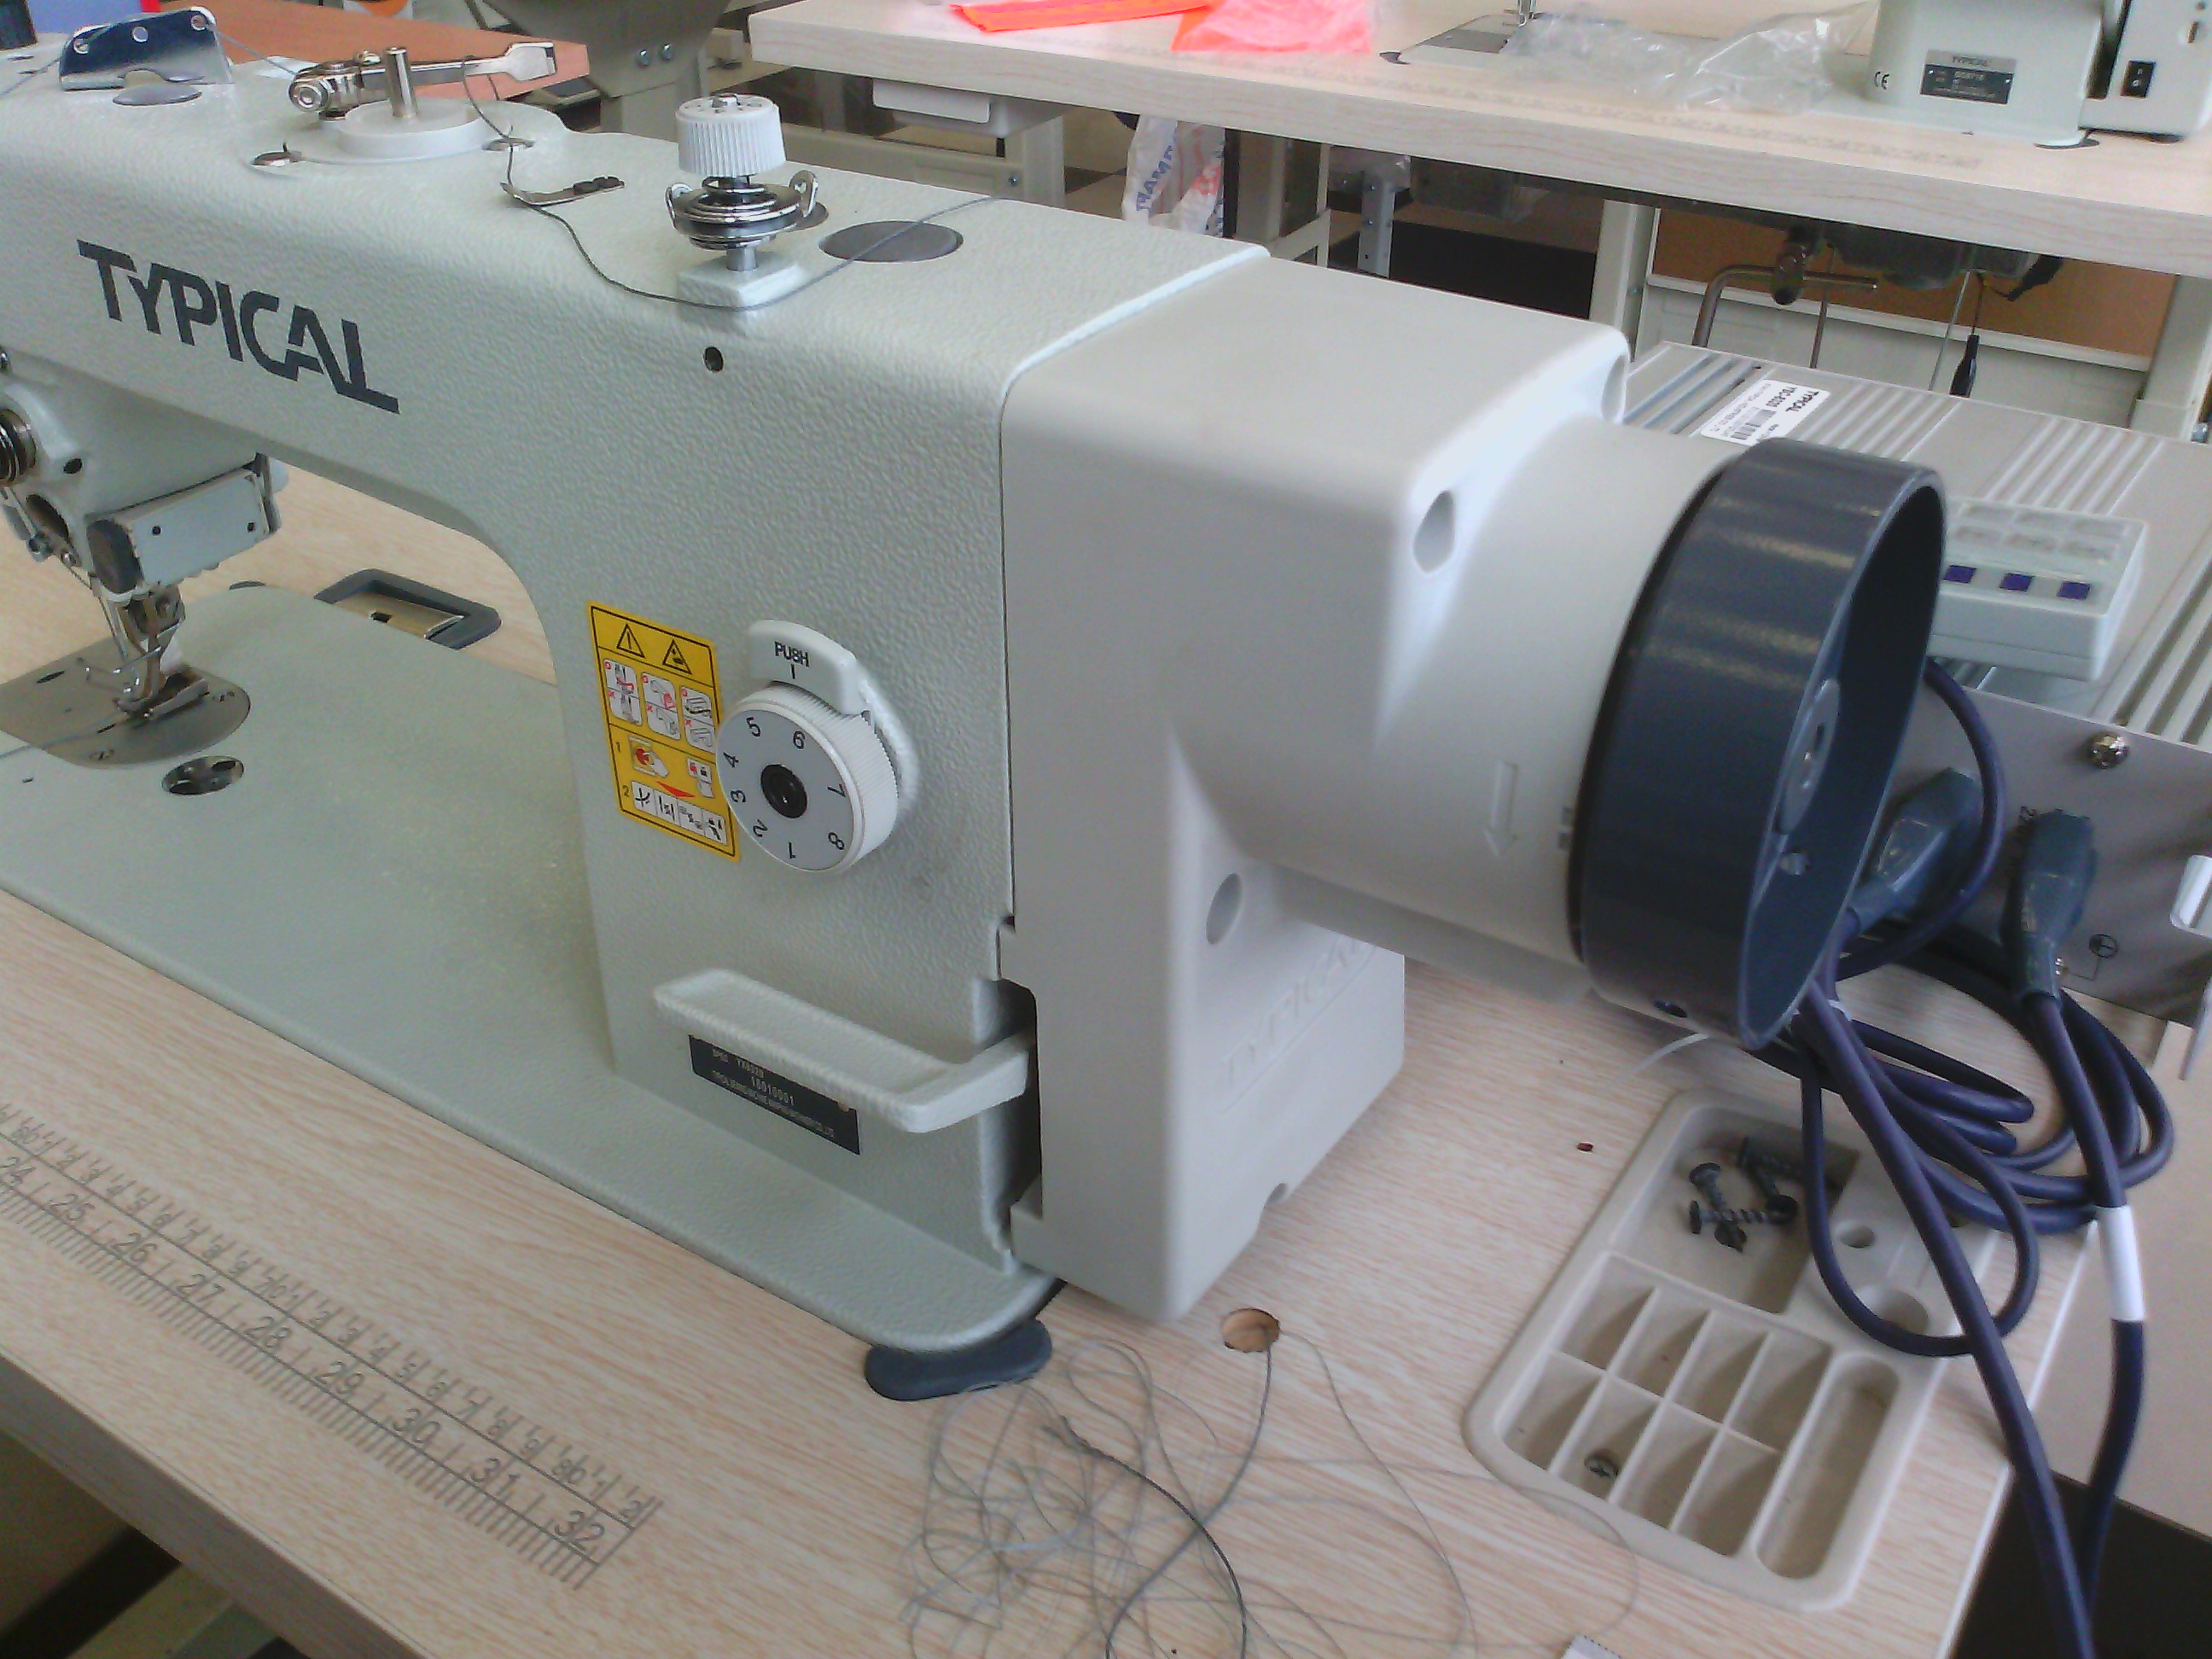 Купить шв машинку. Тупикал GC 0303. Промышленная швейная машина gc0303. Типикал 6150 МД. Типикал 0303 CX.